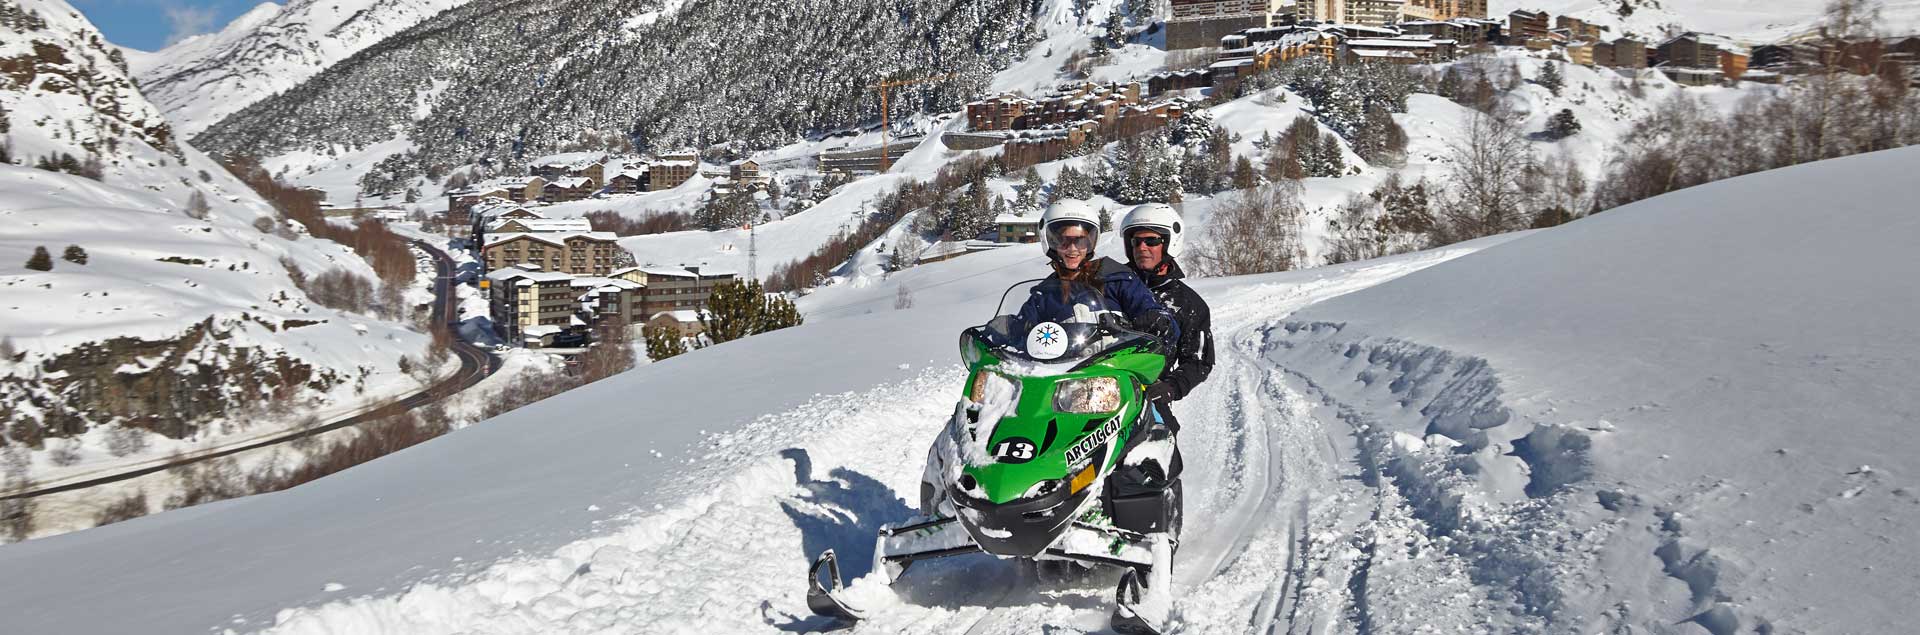 excursiones en moto de nieve con alojamiento en soldeu